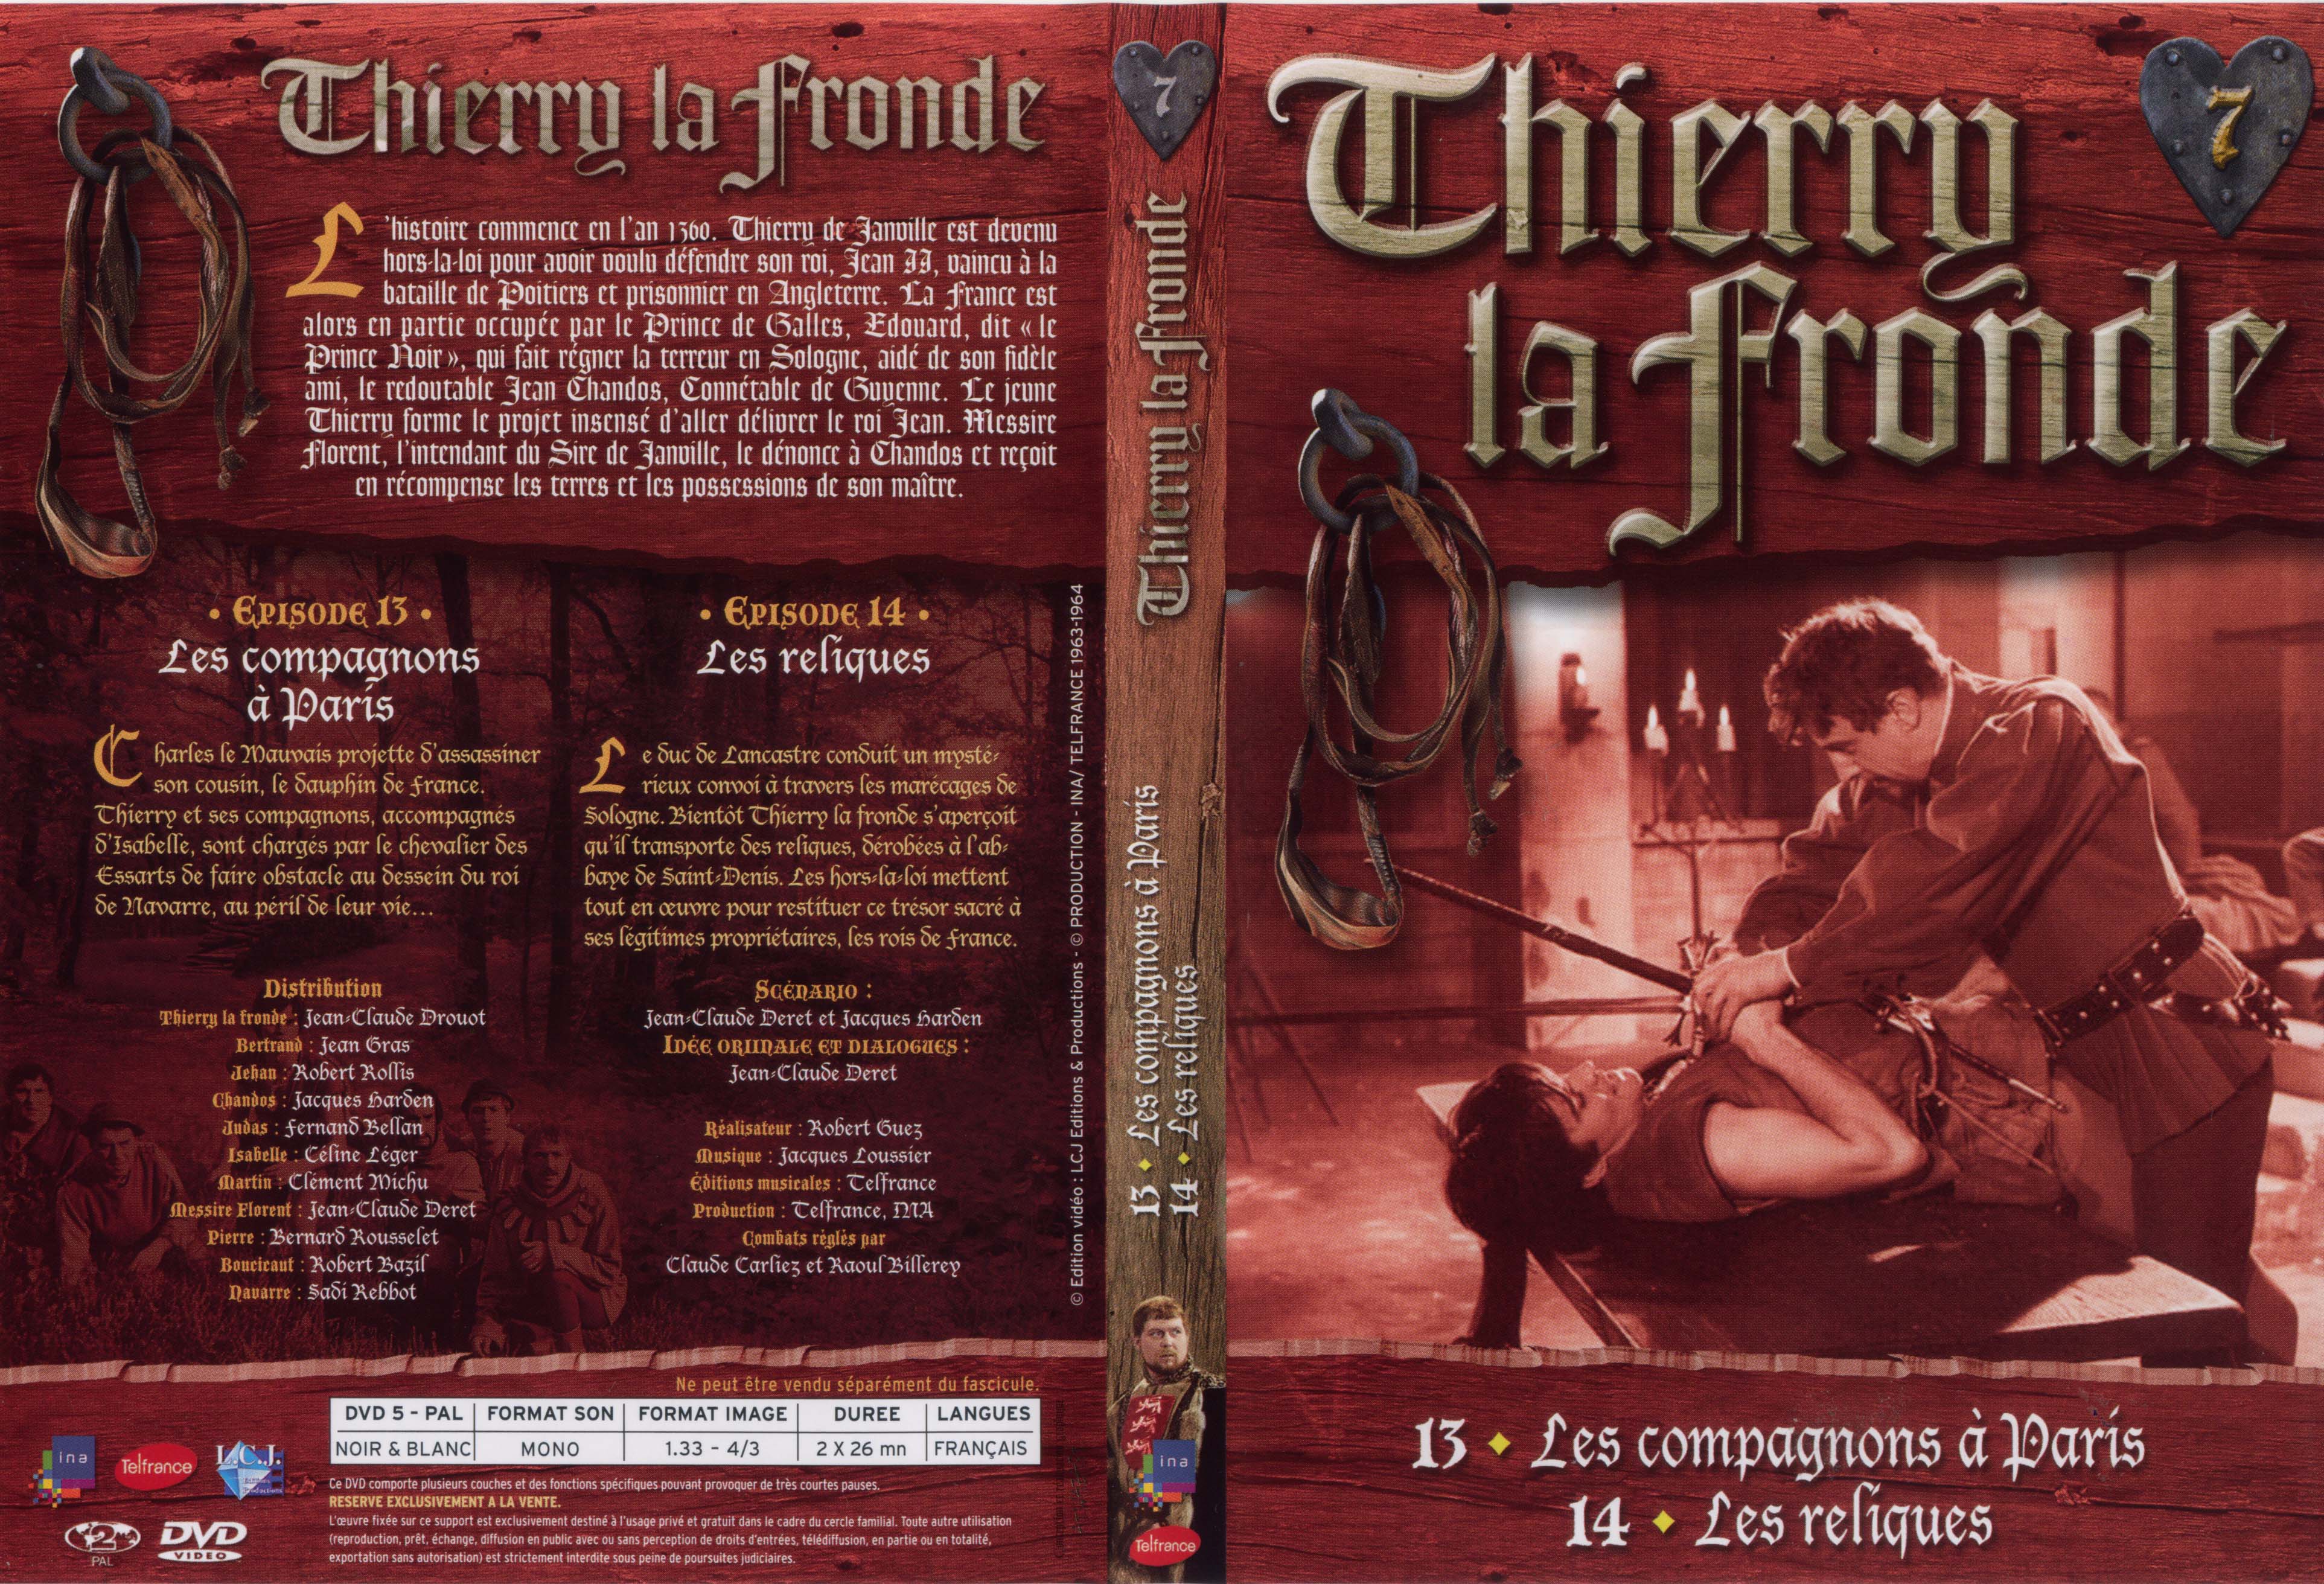 Jaquette DVD Thierry la Fronde vol 07